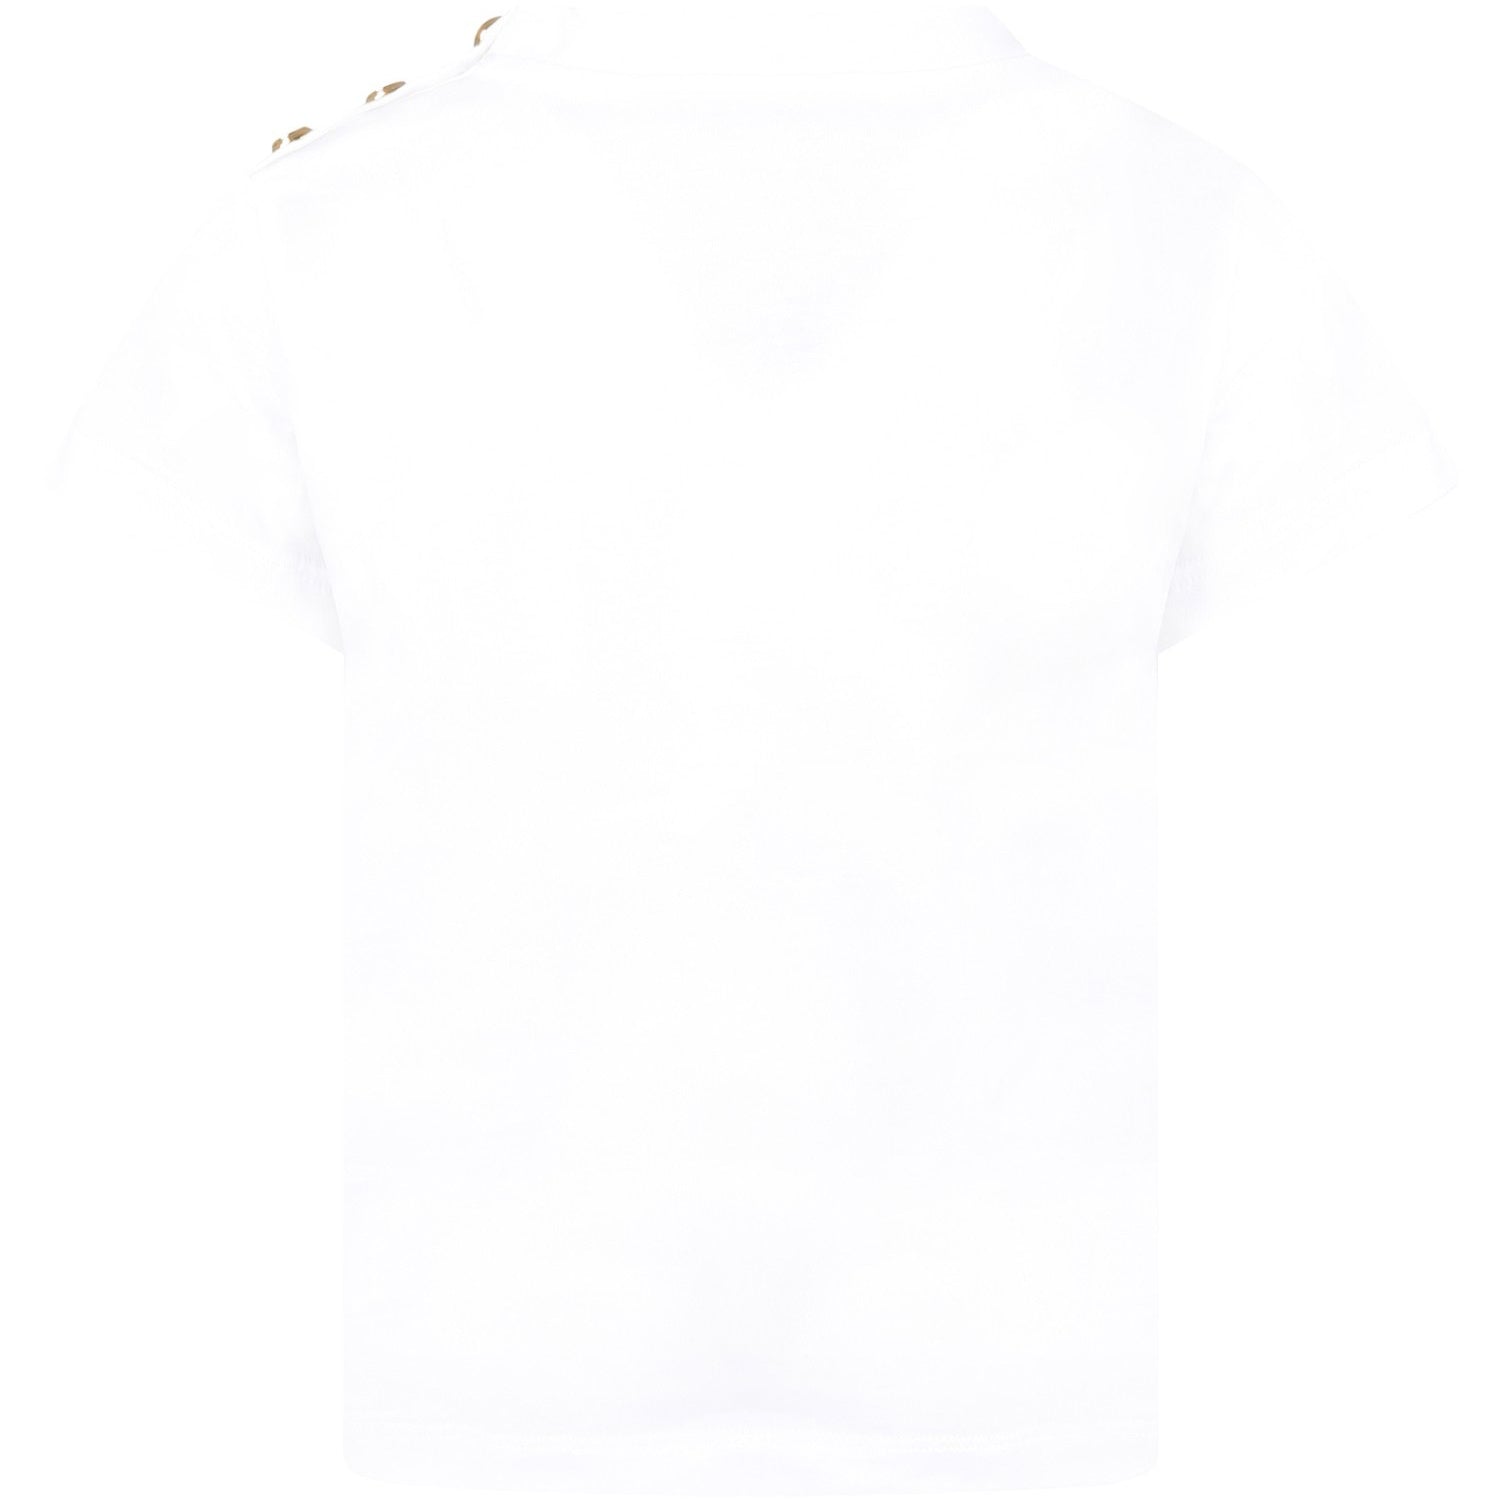 Balmain Girls Classic Logo T-shirt White 10Y